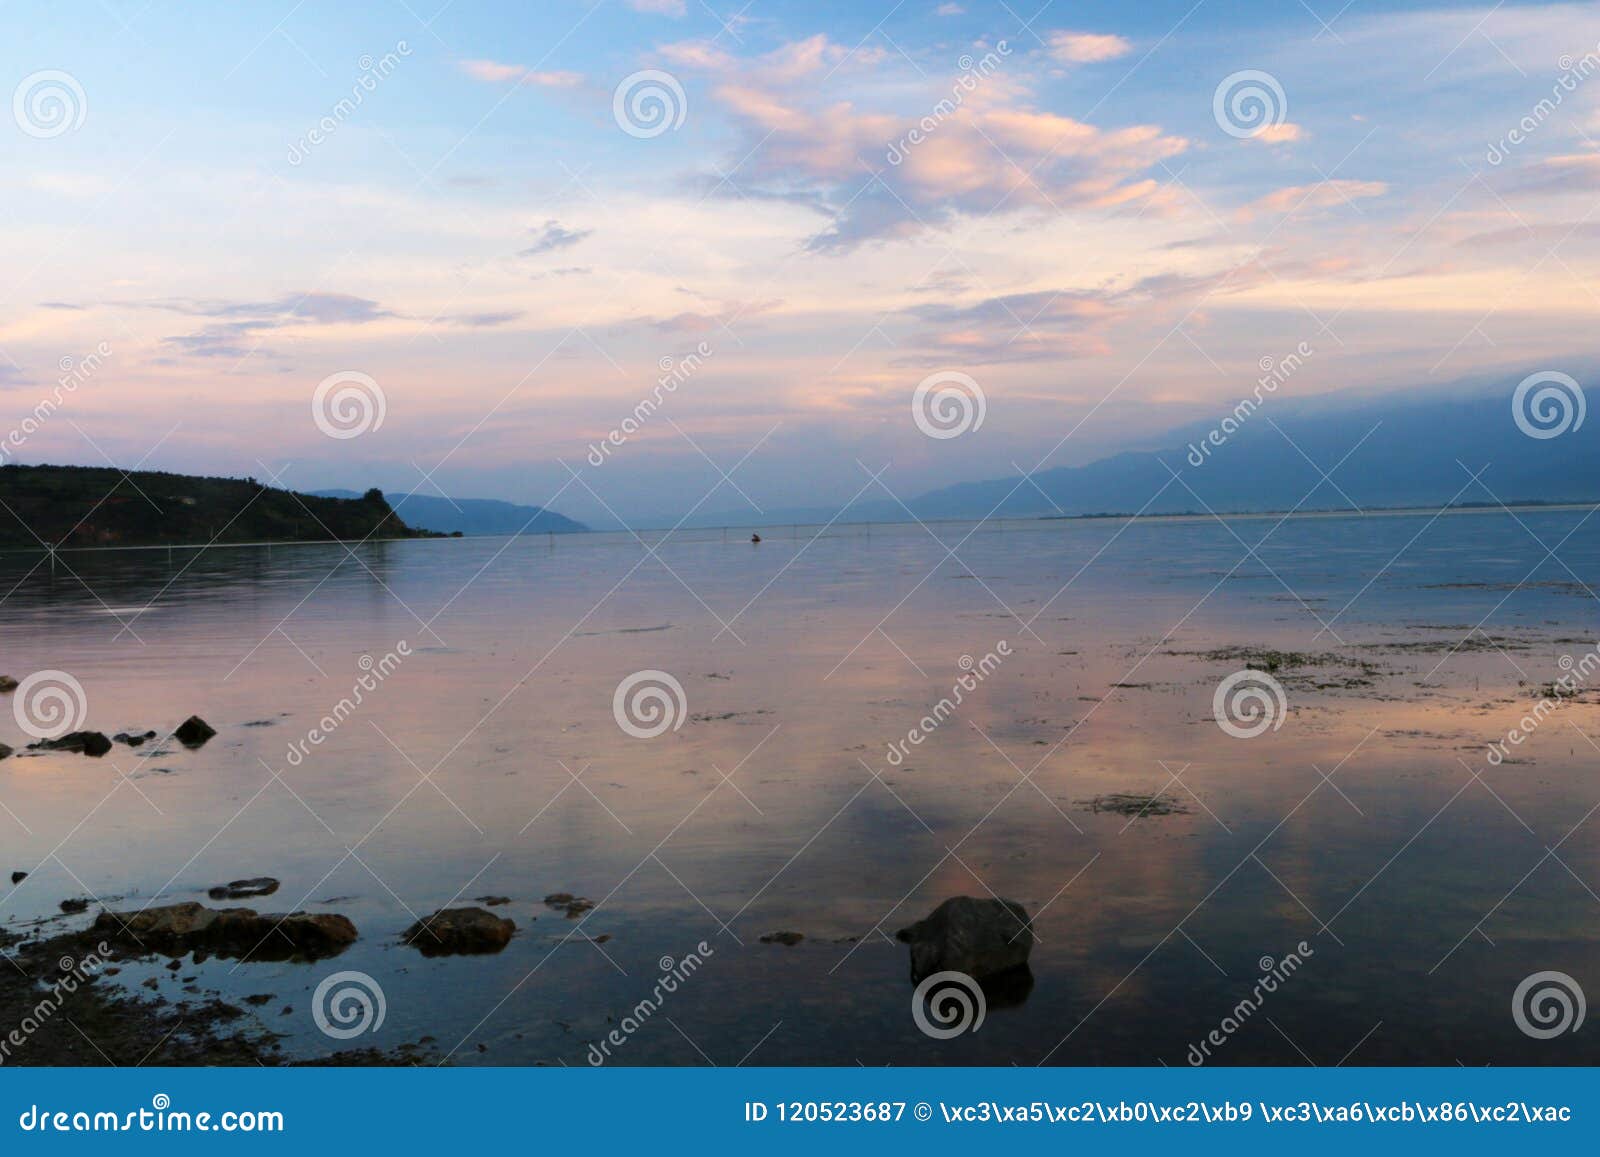 Por do sol sobre o lago do lugu, Dali, yunnan, China. Dando um ciclo em torno da excursão do lago do lugu, o lago do lugu no crepúsculo no fundo do por do sol, parece particularmente quieto e bonito